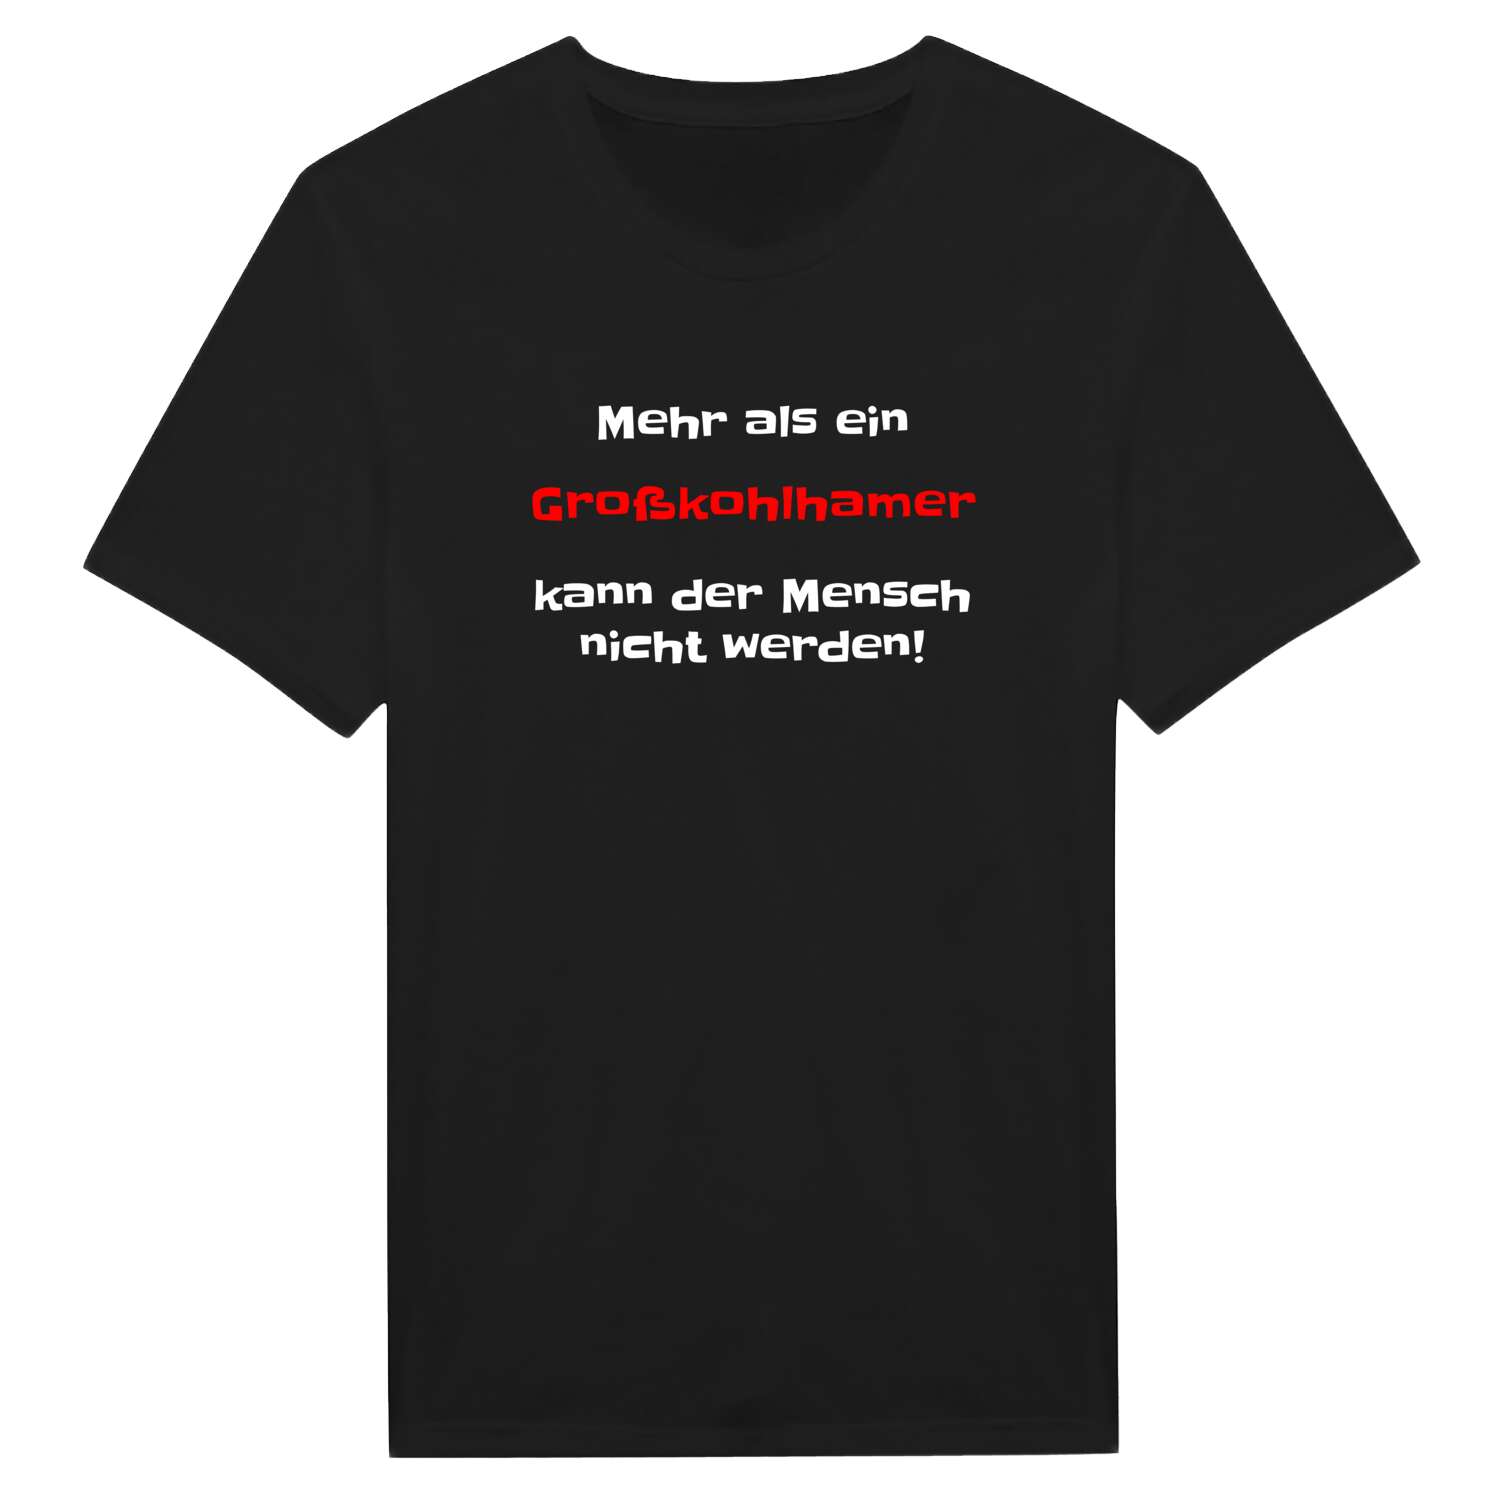 Großkohlham T-Shirt »Mehr als ein«